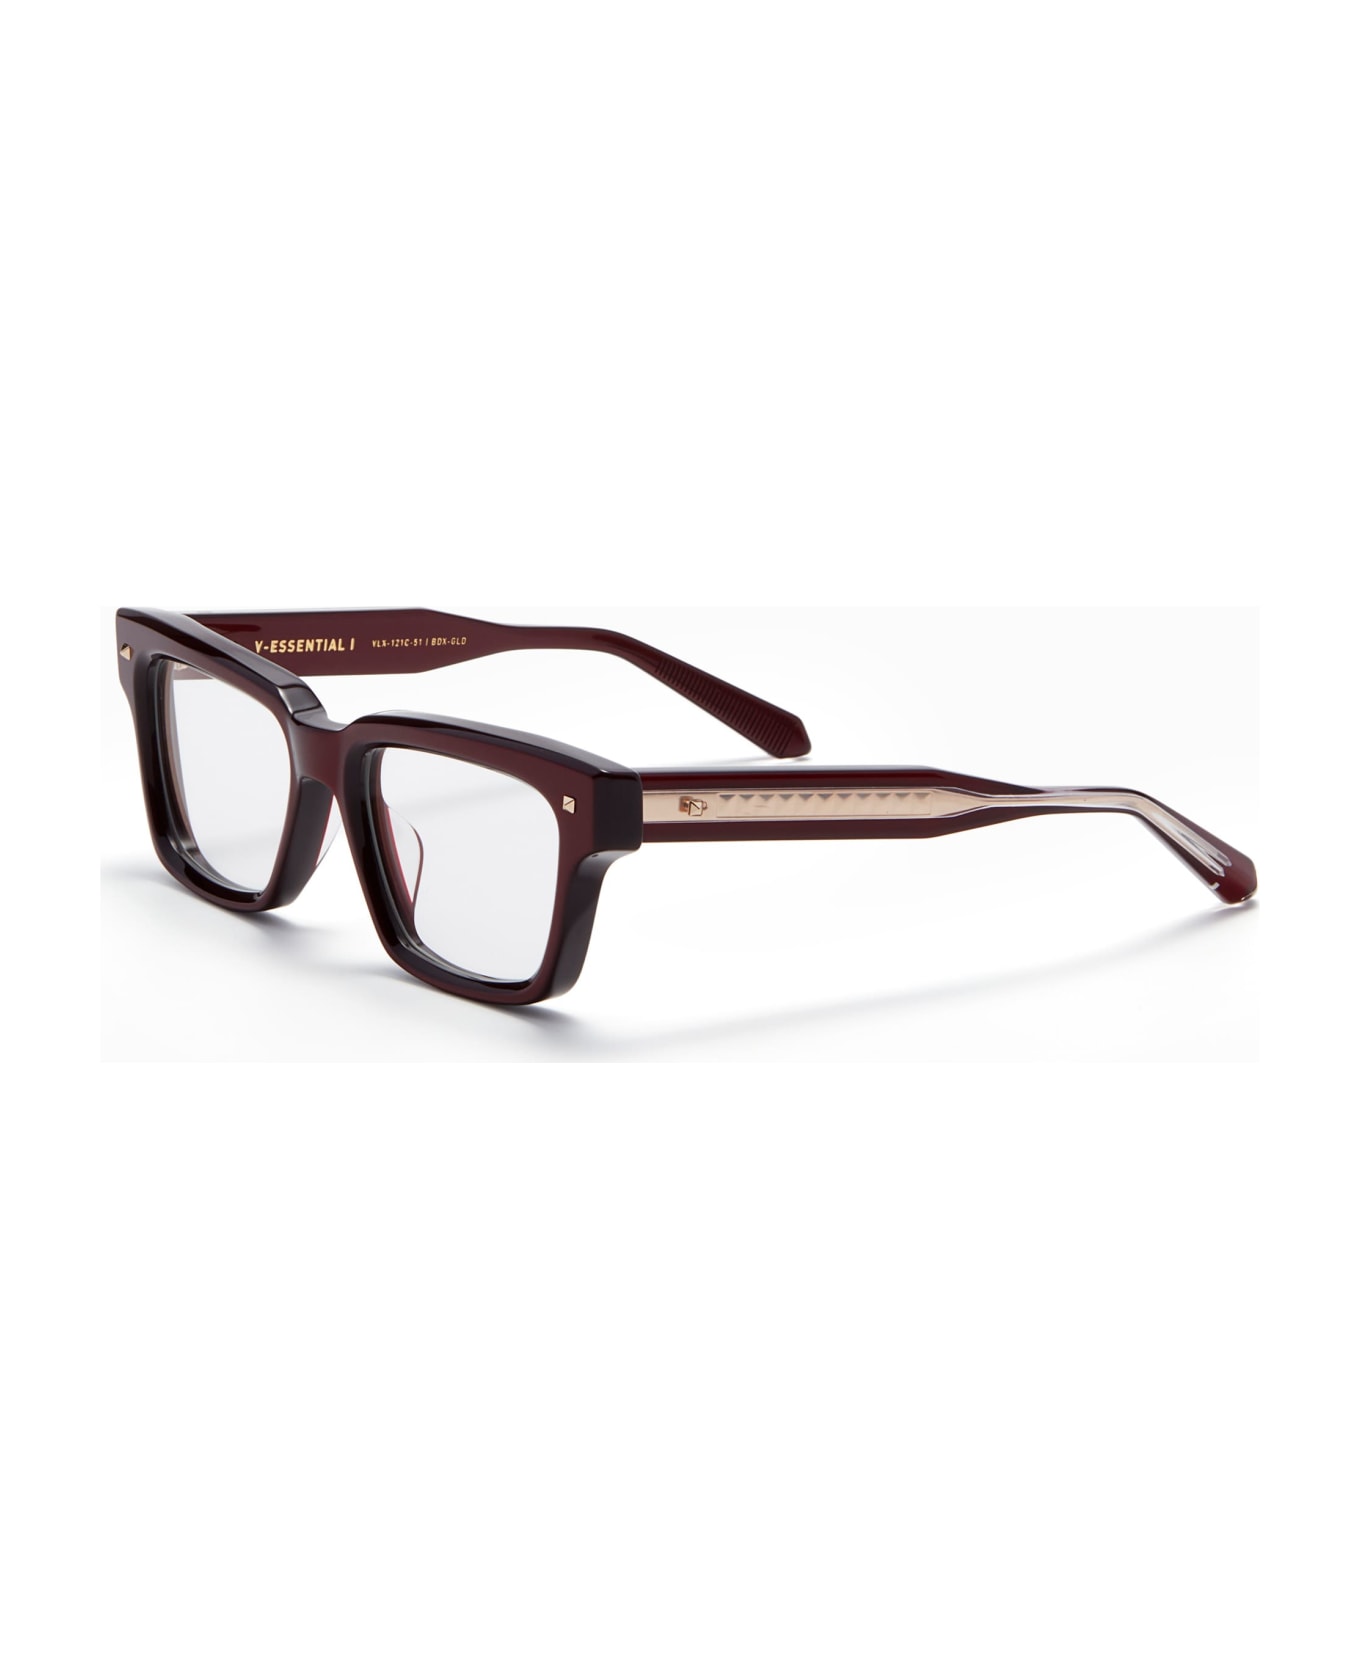 Valentino Eyewear V-essential I - Burgundy Rx Glasses - burgundy アイウェア